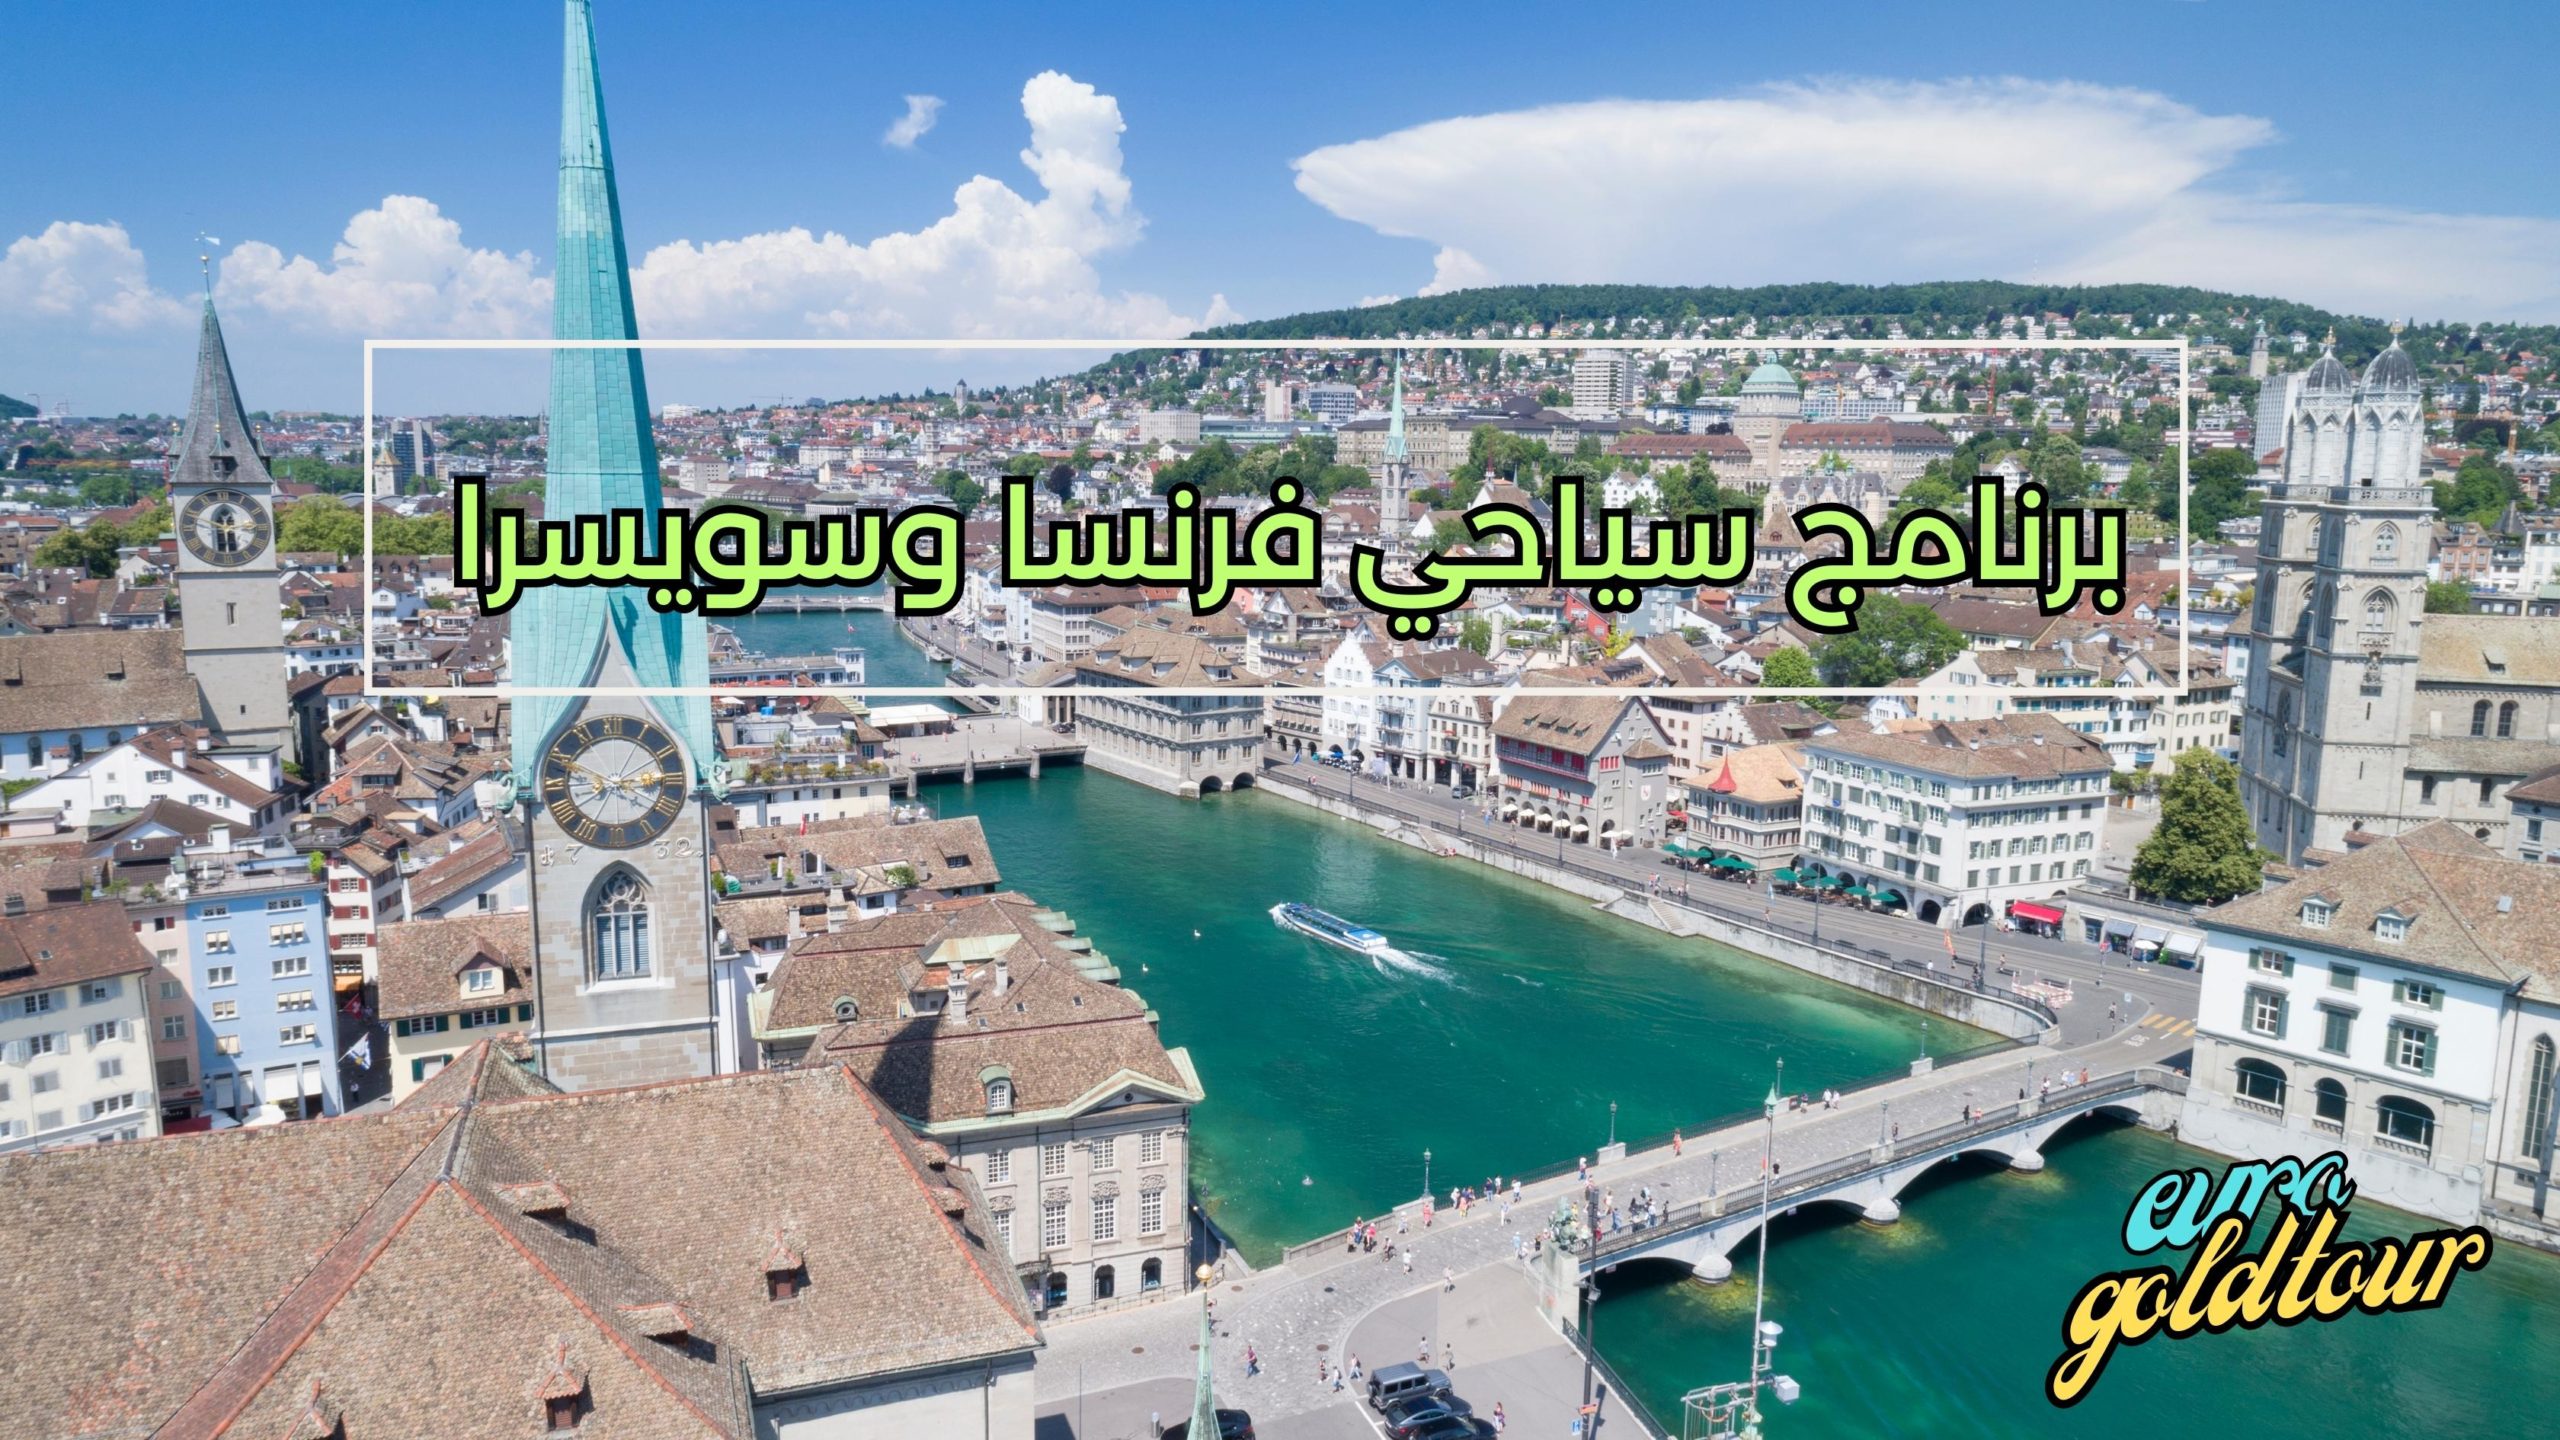 برنامج سياحي فرنسا وسويسرا جدول 6 ايام في المدن السويسرية والفرنسية